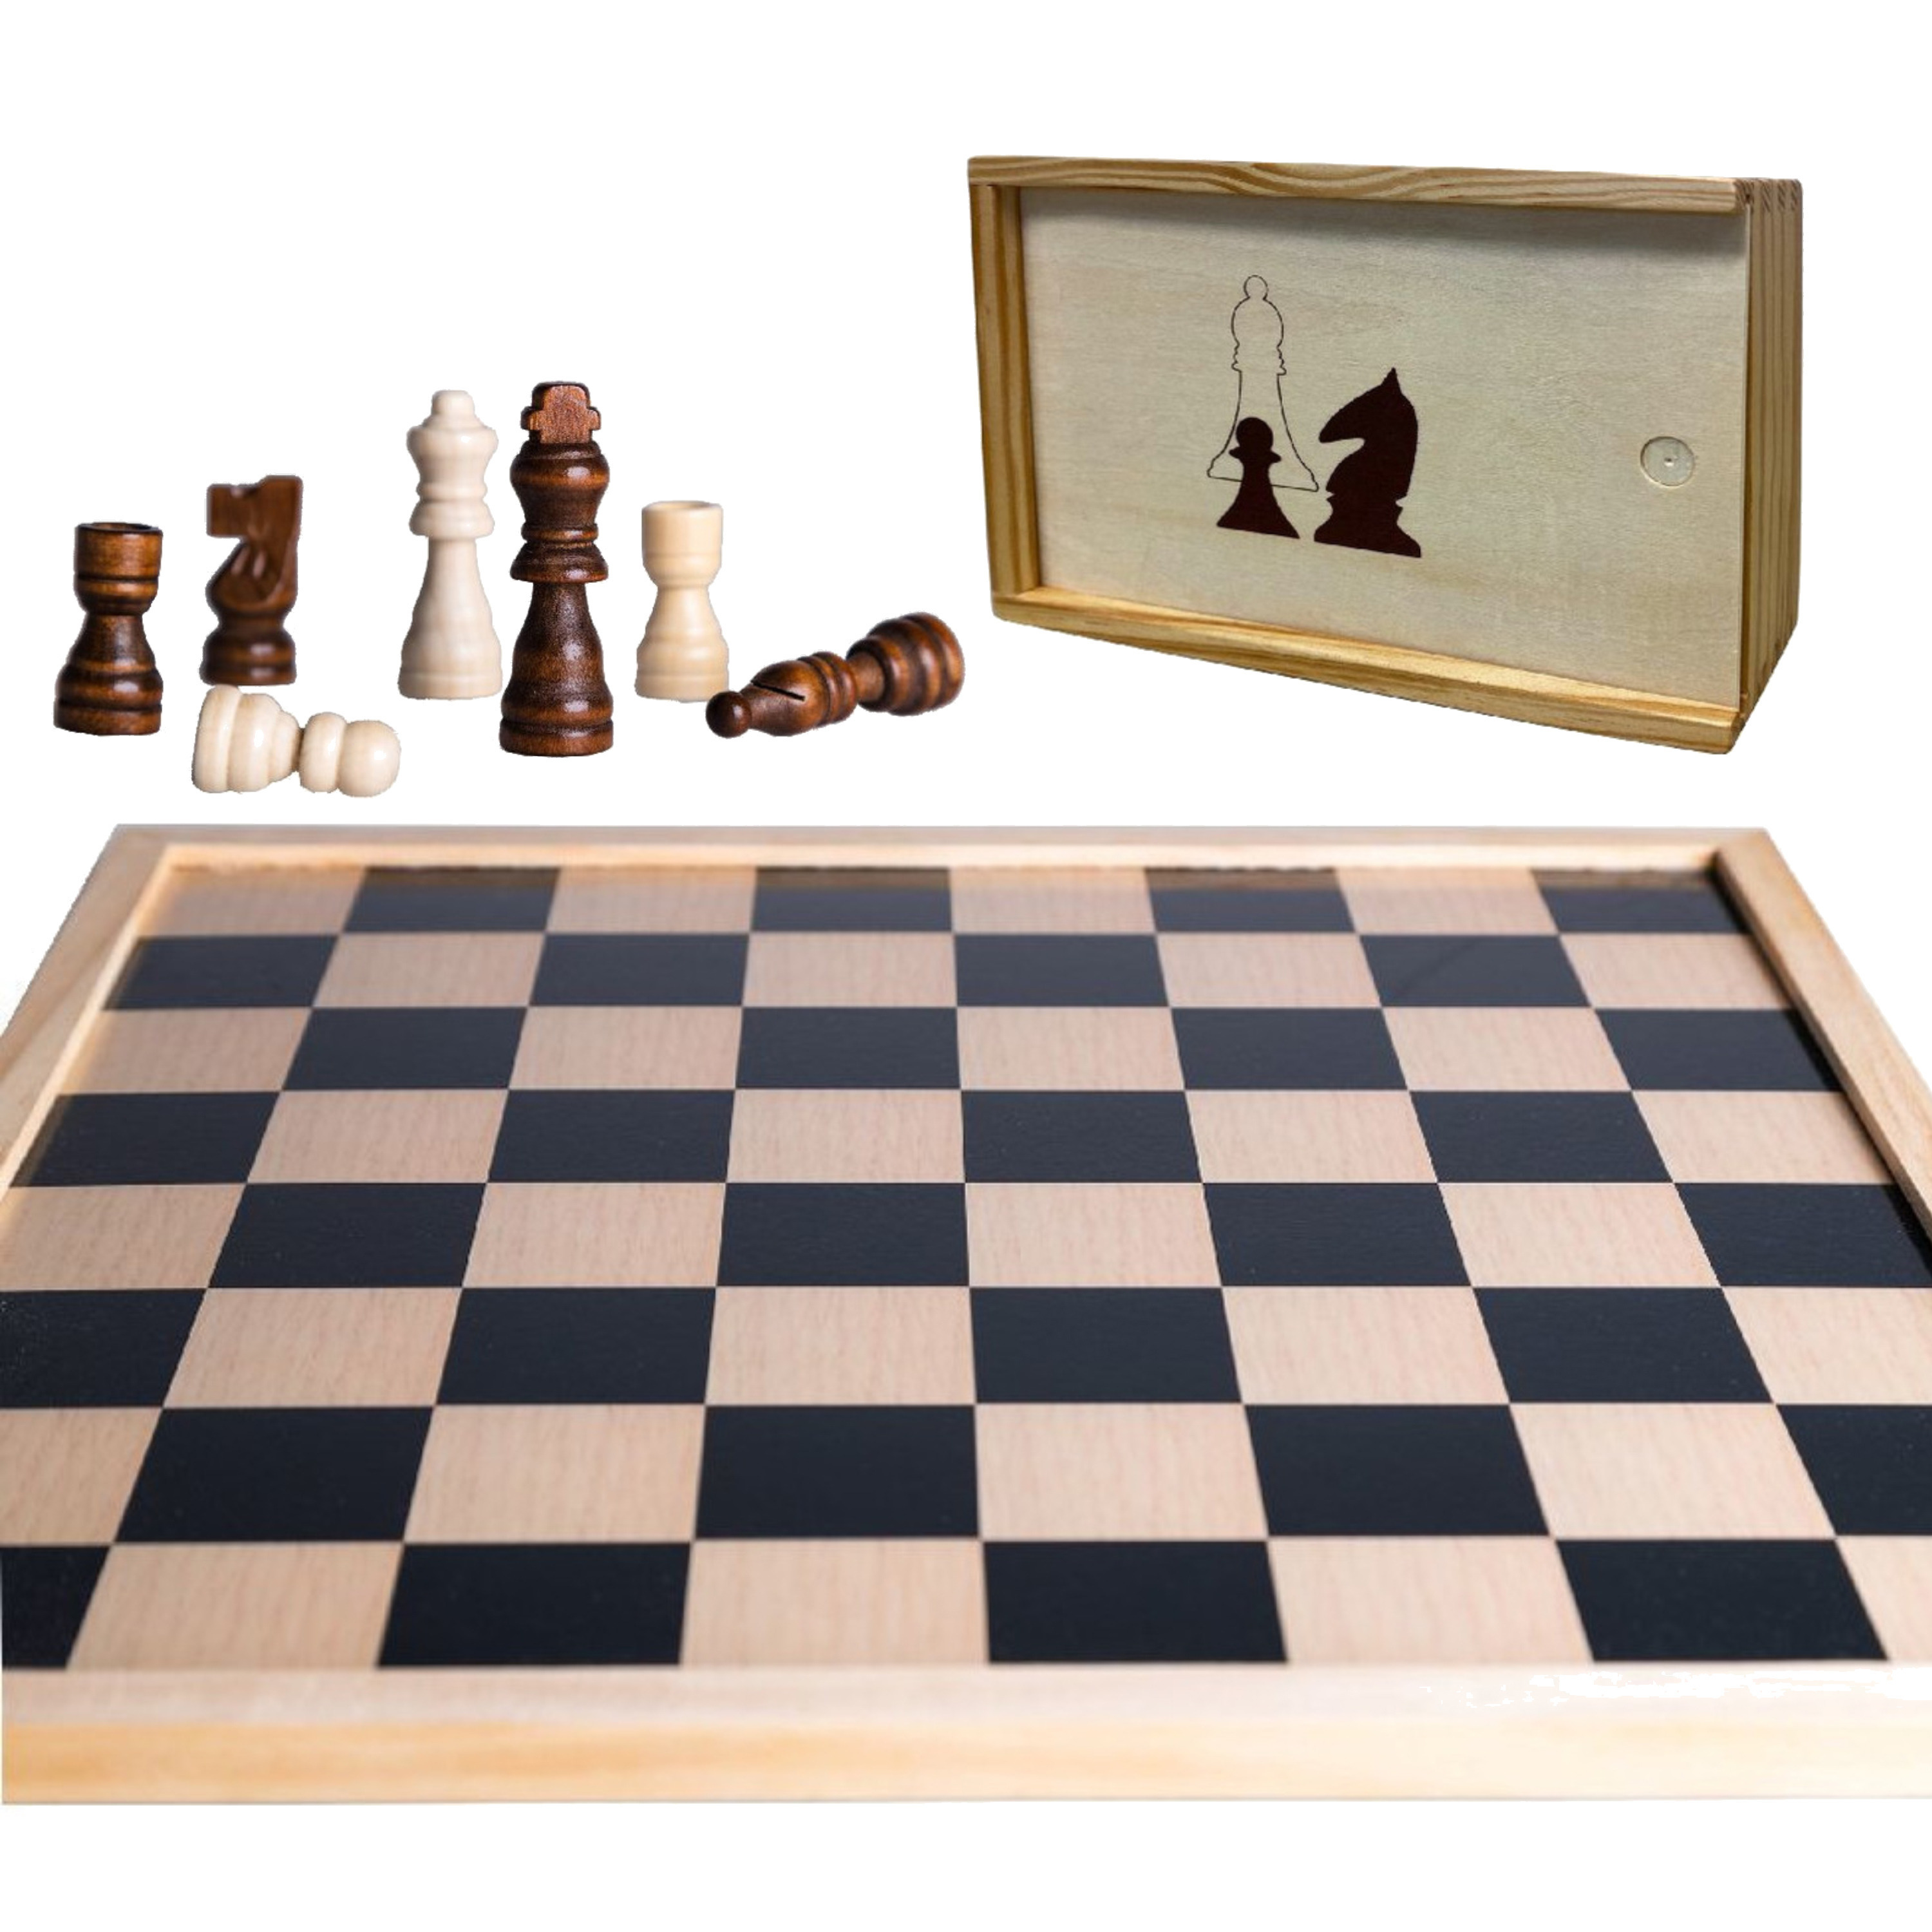 Houten schaakbord-dambord 40 x 40 cm met schaakstukken in opbergkistje